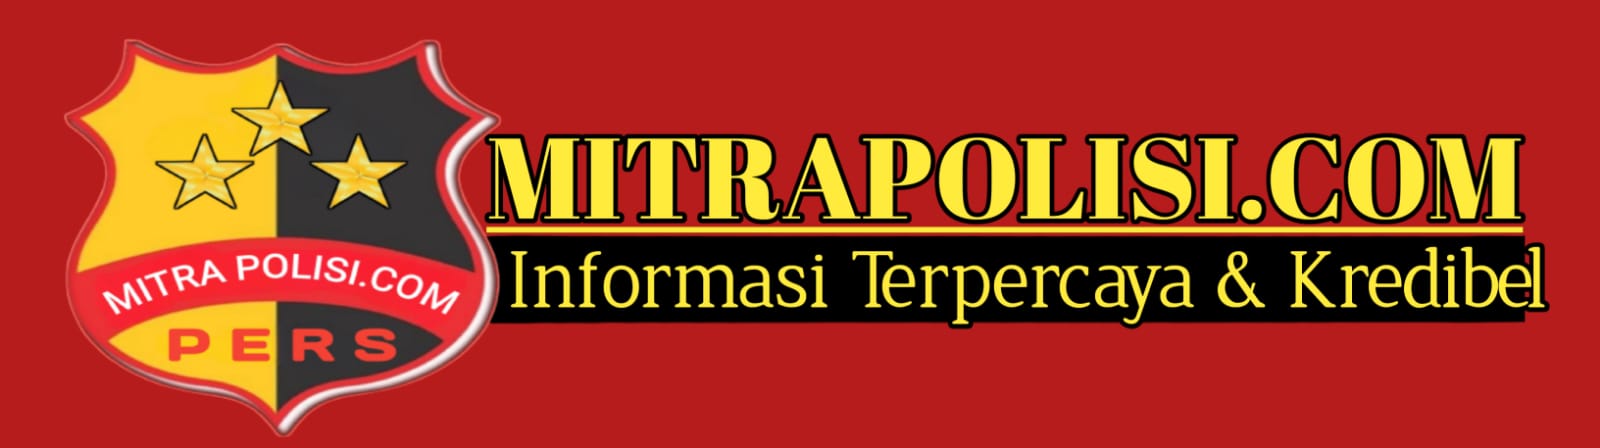 mitrapolisi.com